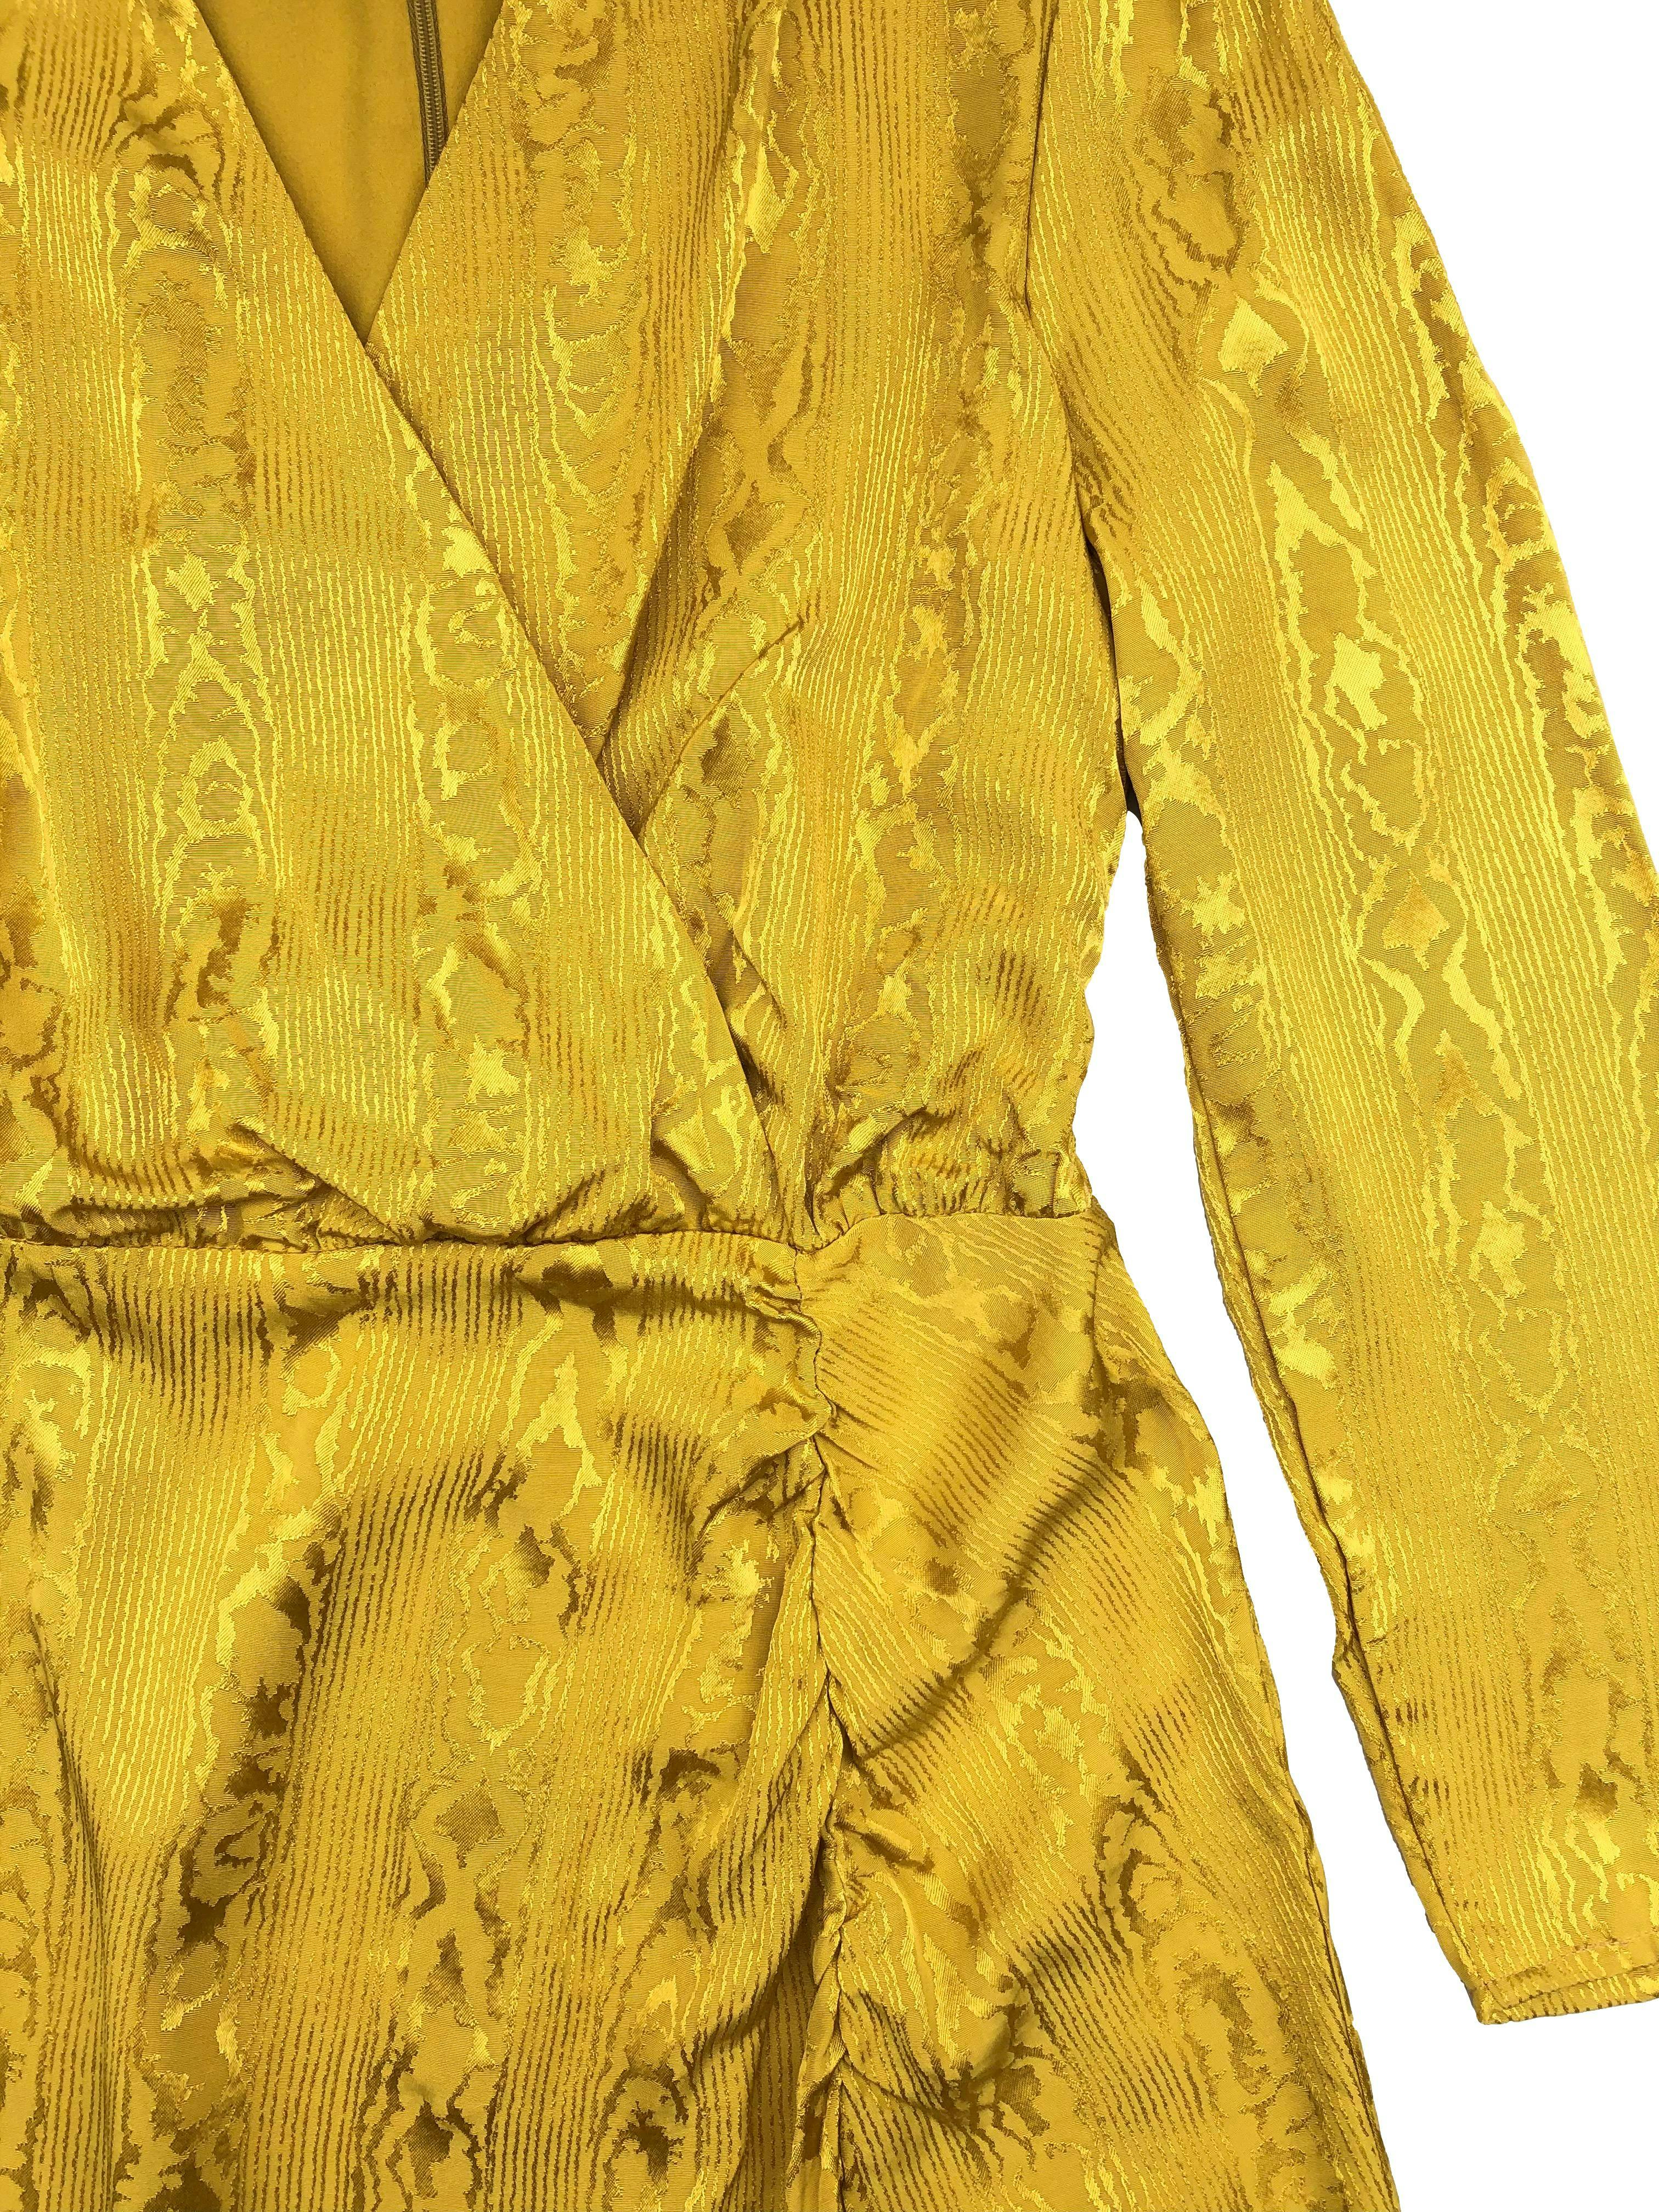 Vestido midi Warehouse amarillo con brocado satinado al tono, escote cruzado, cierre en la espalda y abertura en la pierna. Busto 100cm Cintura 80cm Largo 130cm